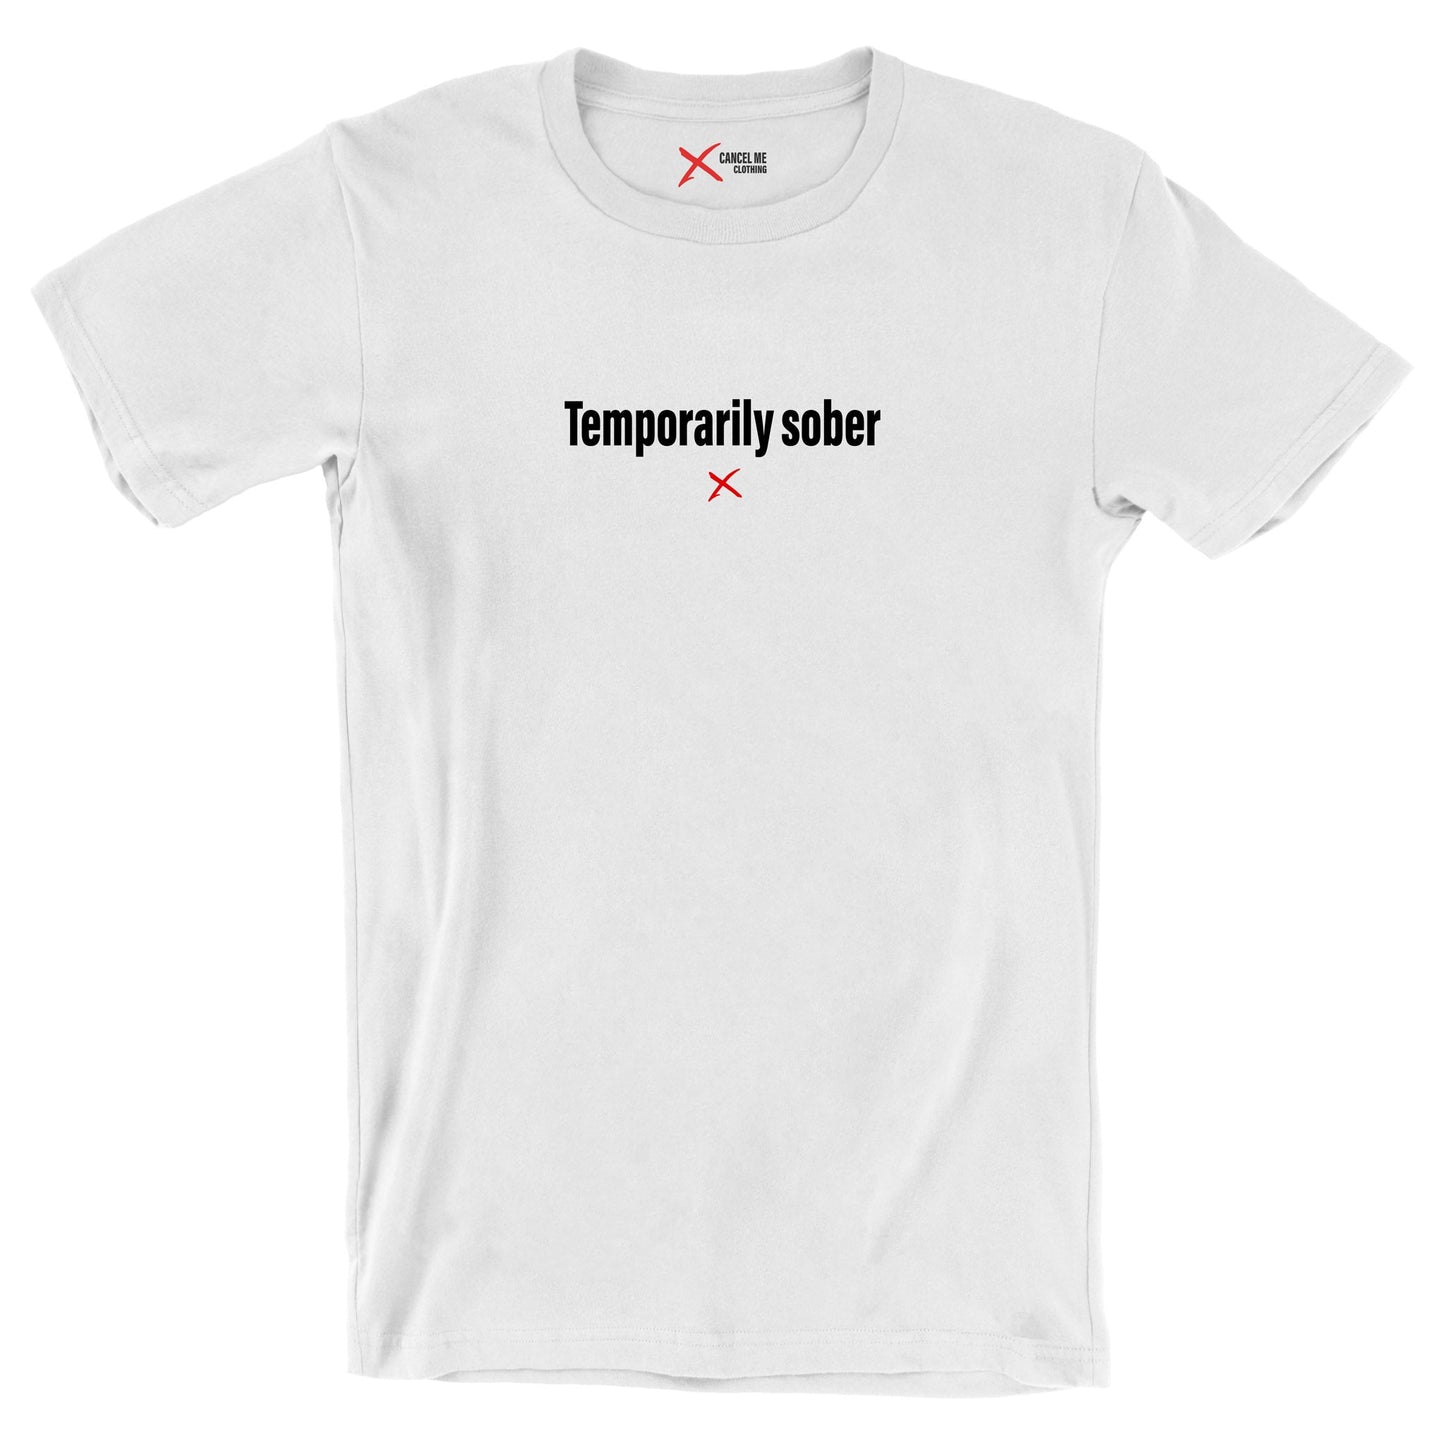 Temporarily sober - Shirt